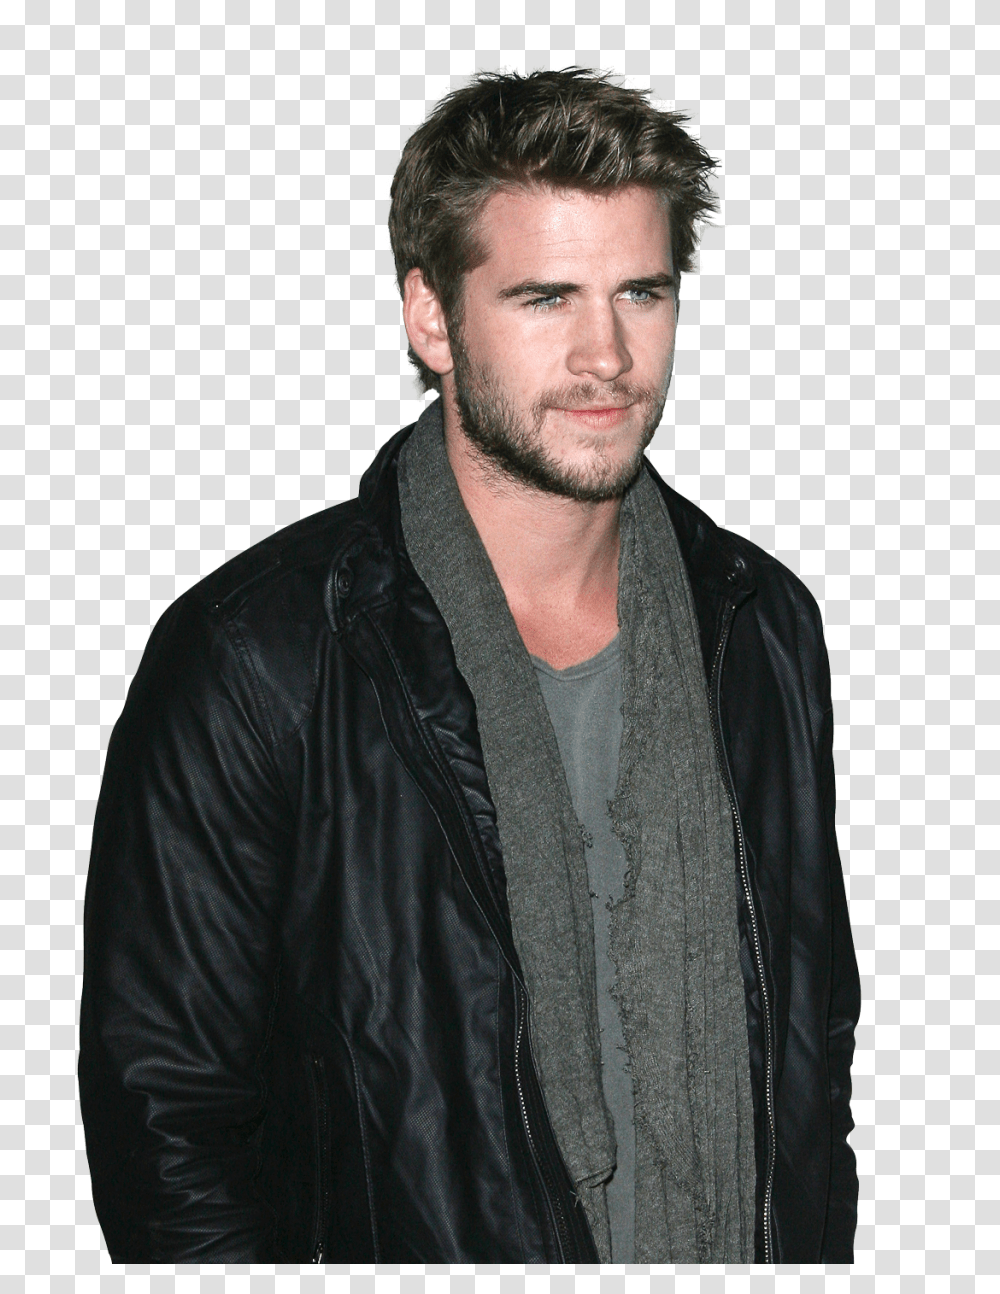 Liam Hemsworth Image, Celebrity, Apparel, Jacket Transparent Png